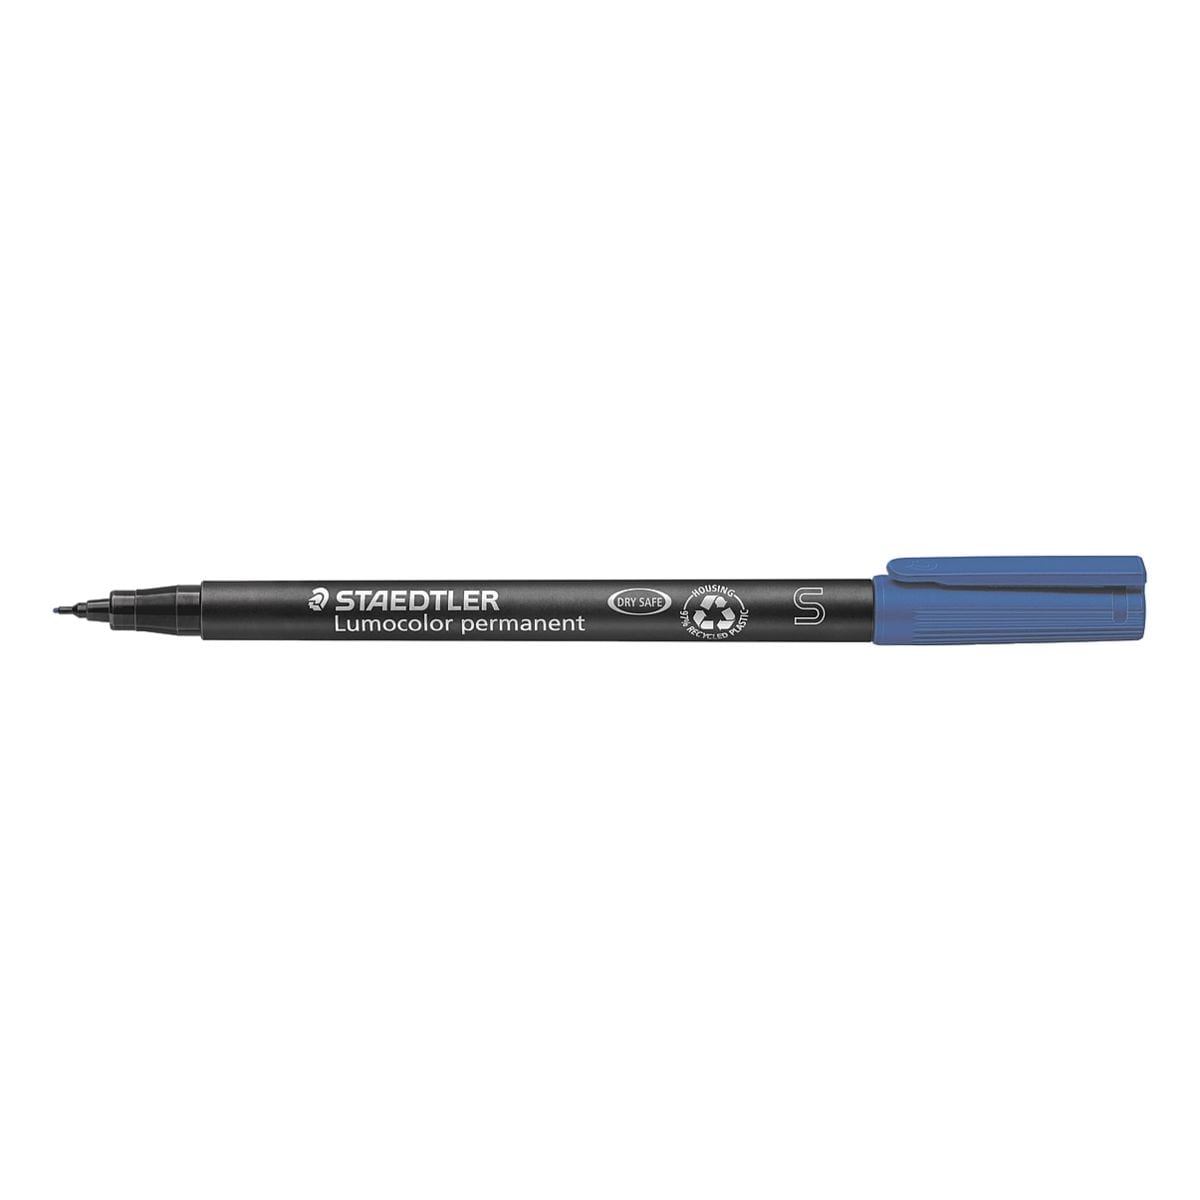 STAEDTLER marqueur indlbile Lumocolor® 313 permanent S - pointe ogive, Epaisseur de trait 0,4 mm (S)